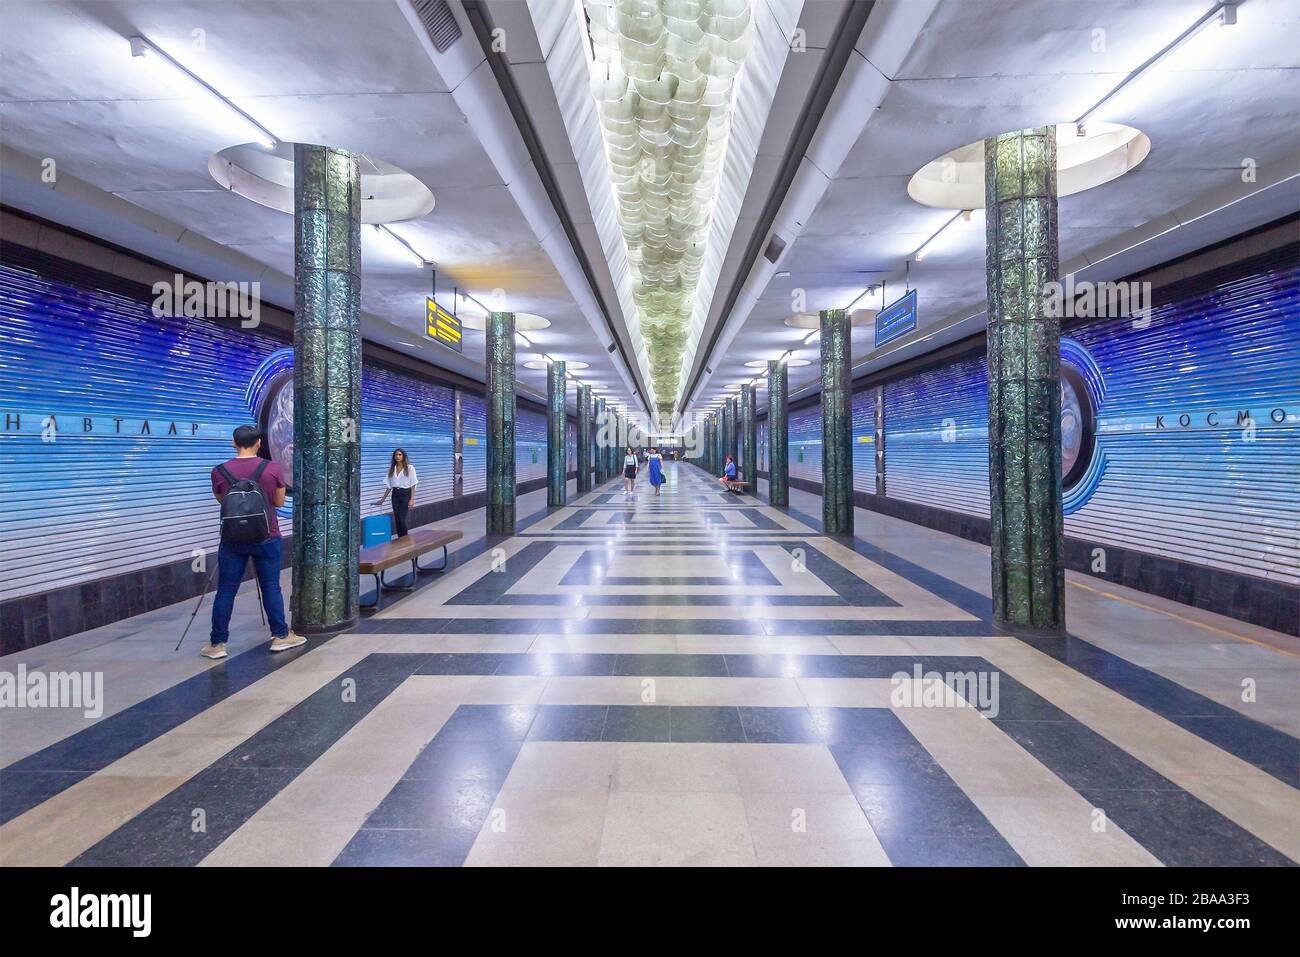 La station de métro Kosmonavtlar est décorée sur le thème du programme spatial à Tachkent, en Ouzbékistan. Station de métro des années soviétiques avec colonnes symétriques. Banque D'Images